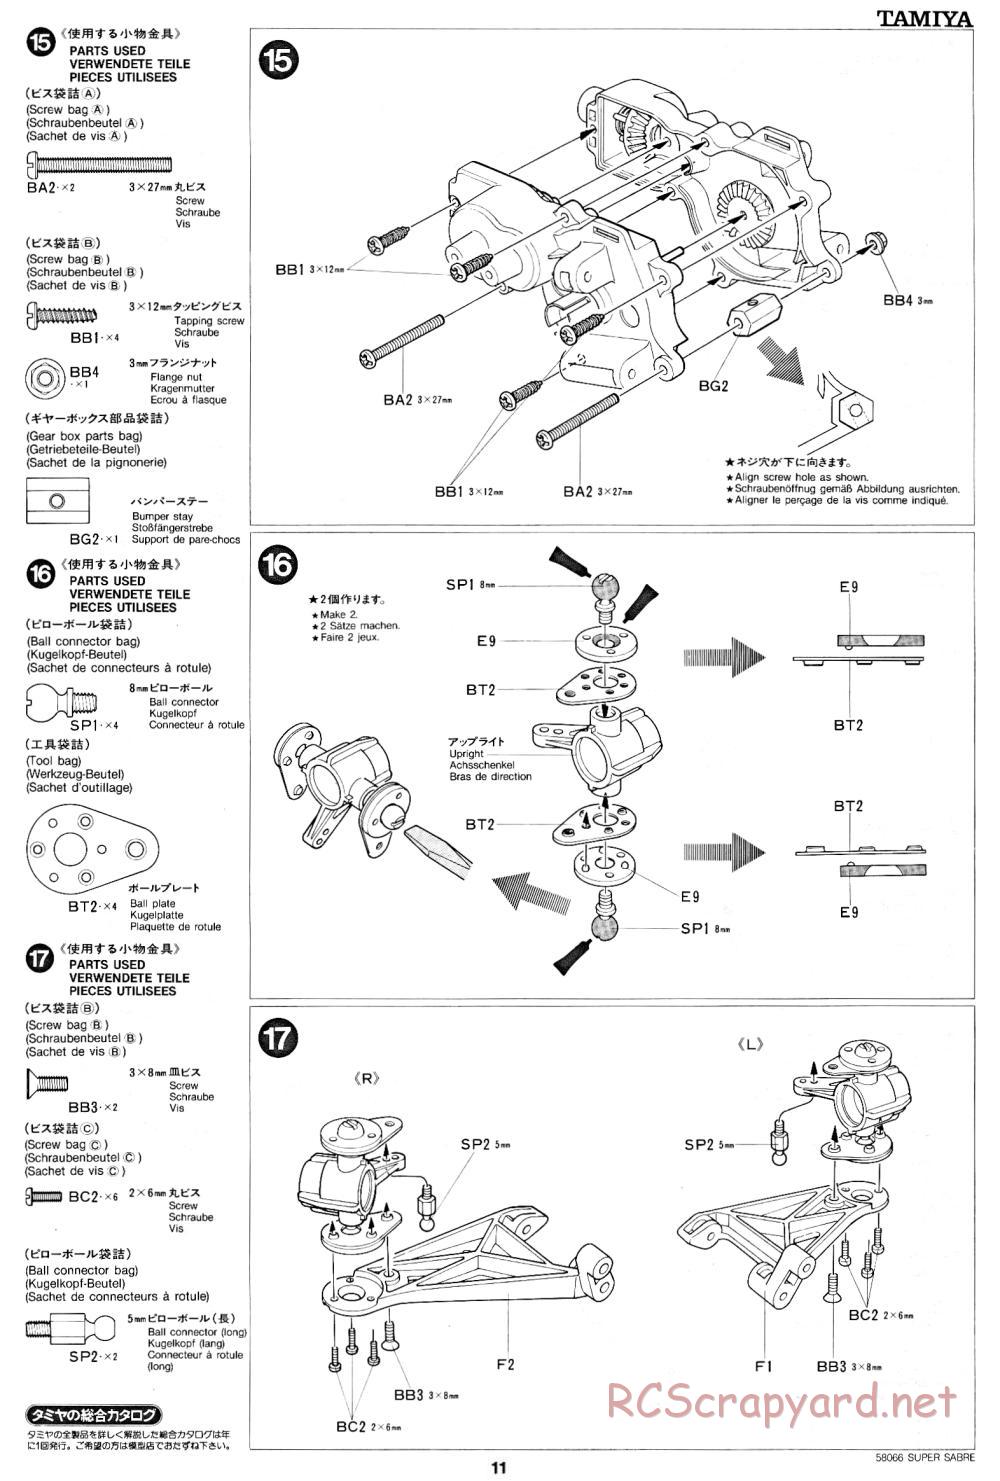 Tamiya - Super Sabre - 58066 - Manual - Page 11